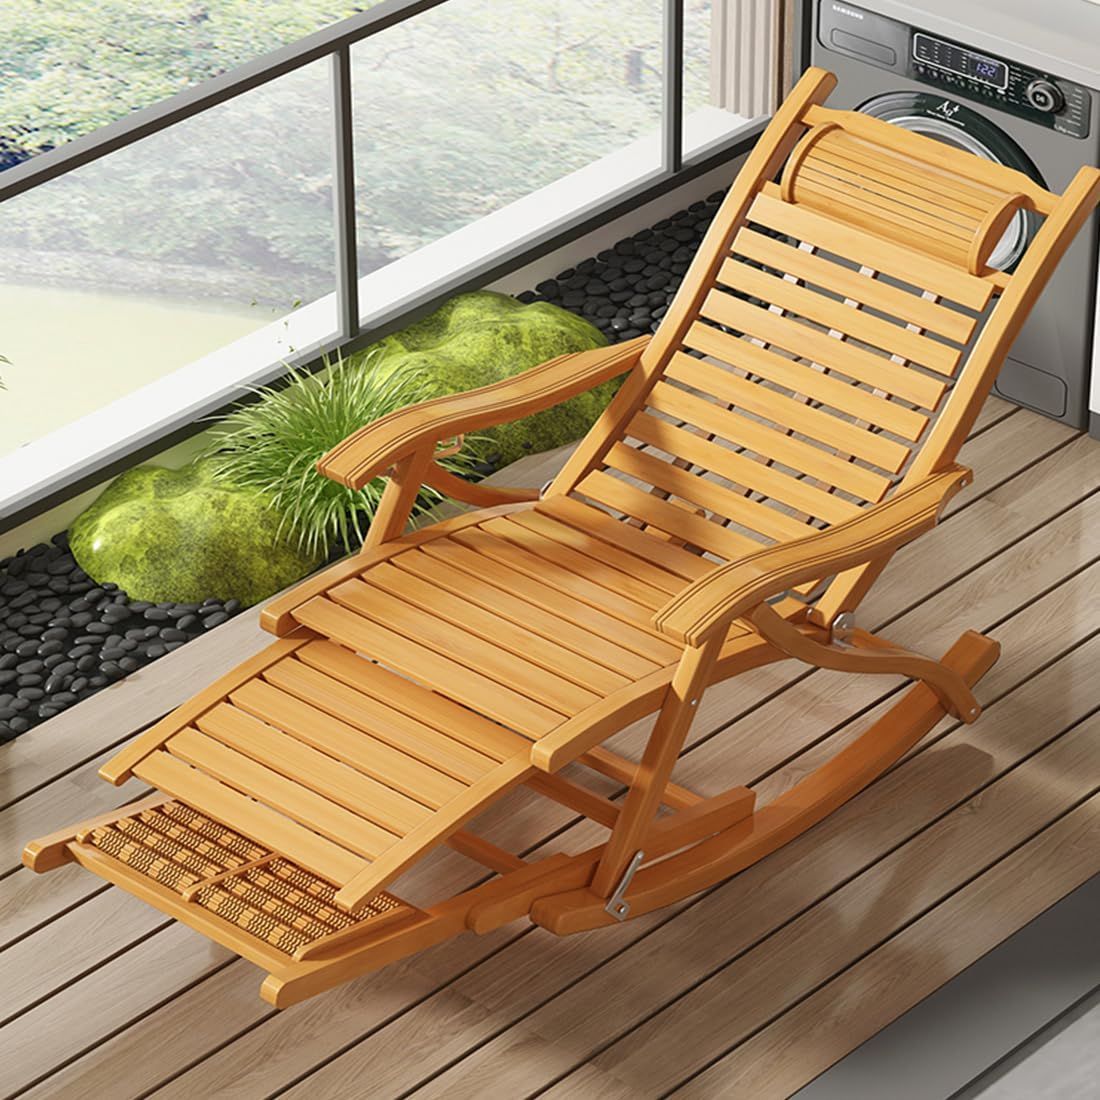 【数量限定】天然竹製 ハイバックチェア 揺れる椅子 ラウンジチェア いす リクライニングチェア 1人掛け おしゃれ リラックスチェア ゆったり  折りたたみ 通気性あり 「Humrriet」ロッキングチェア 角度調節